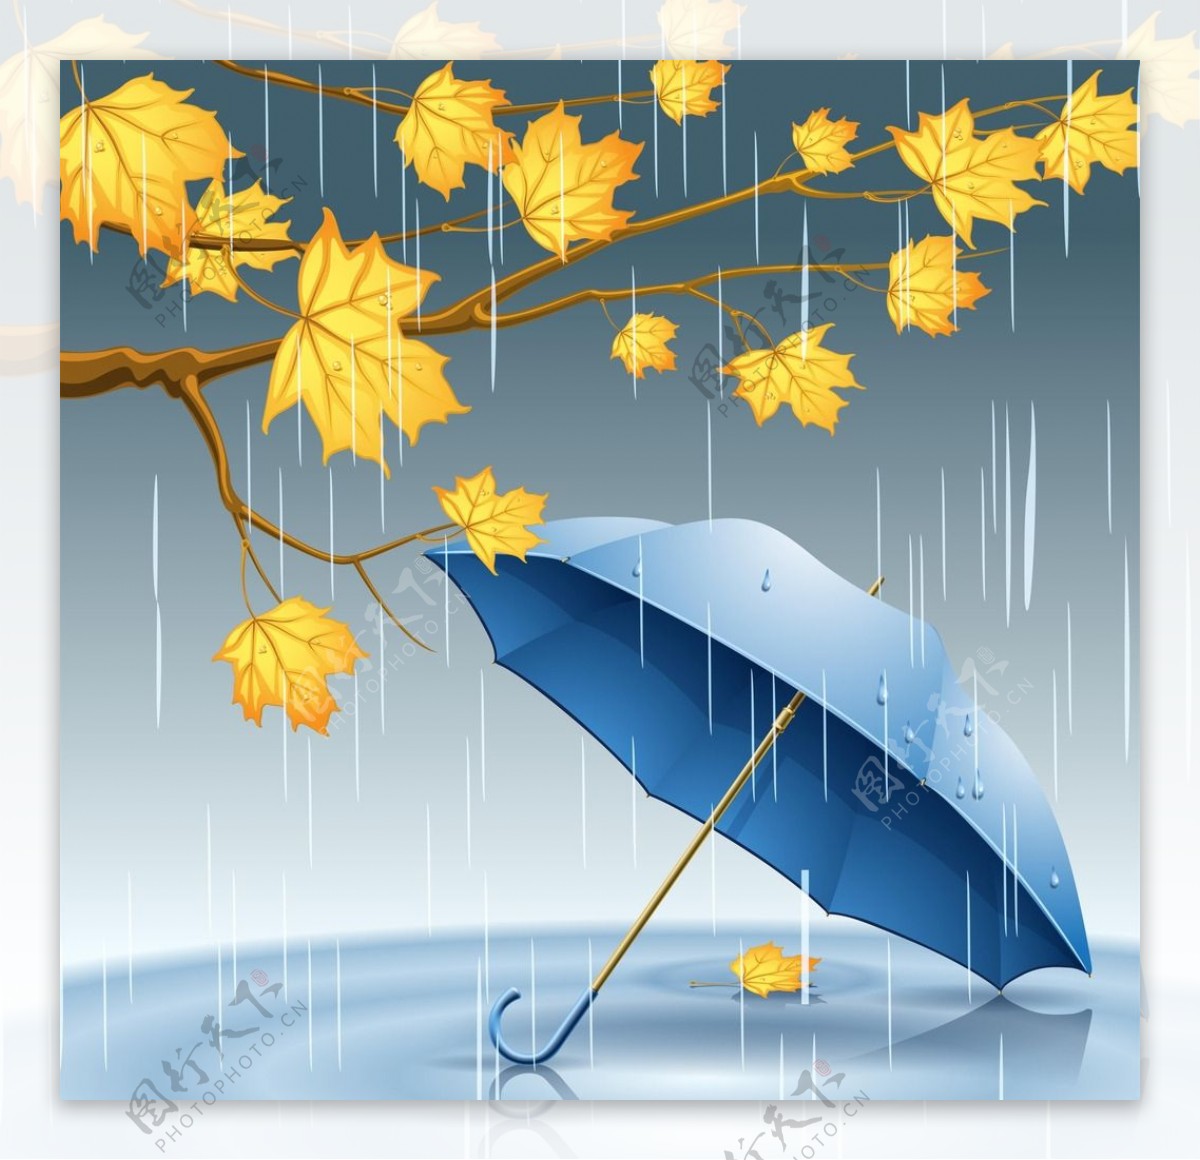 下雨天的雨伞与枫叶图片